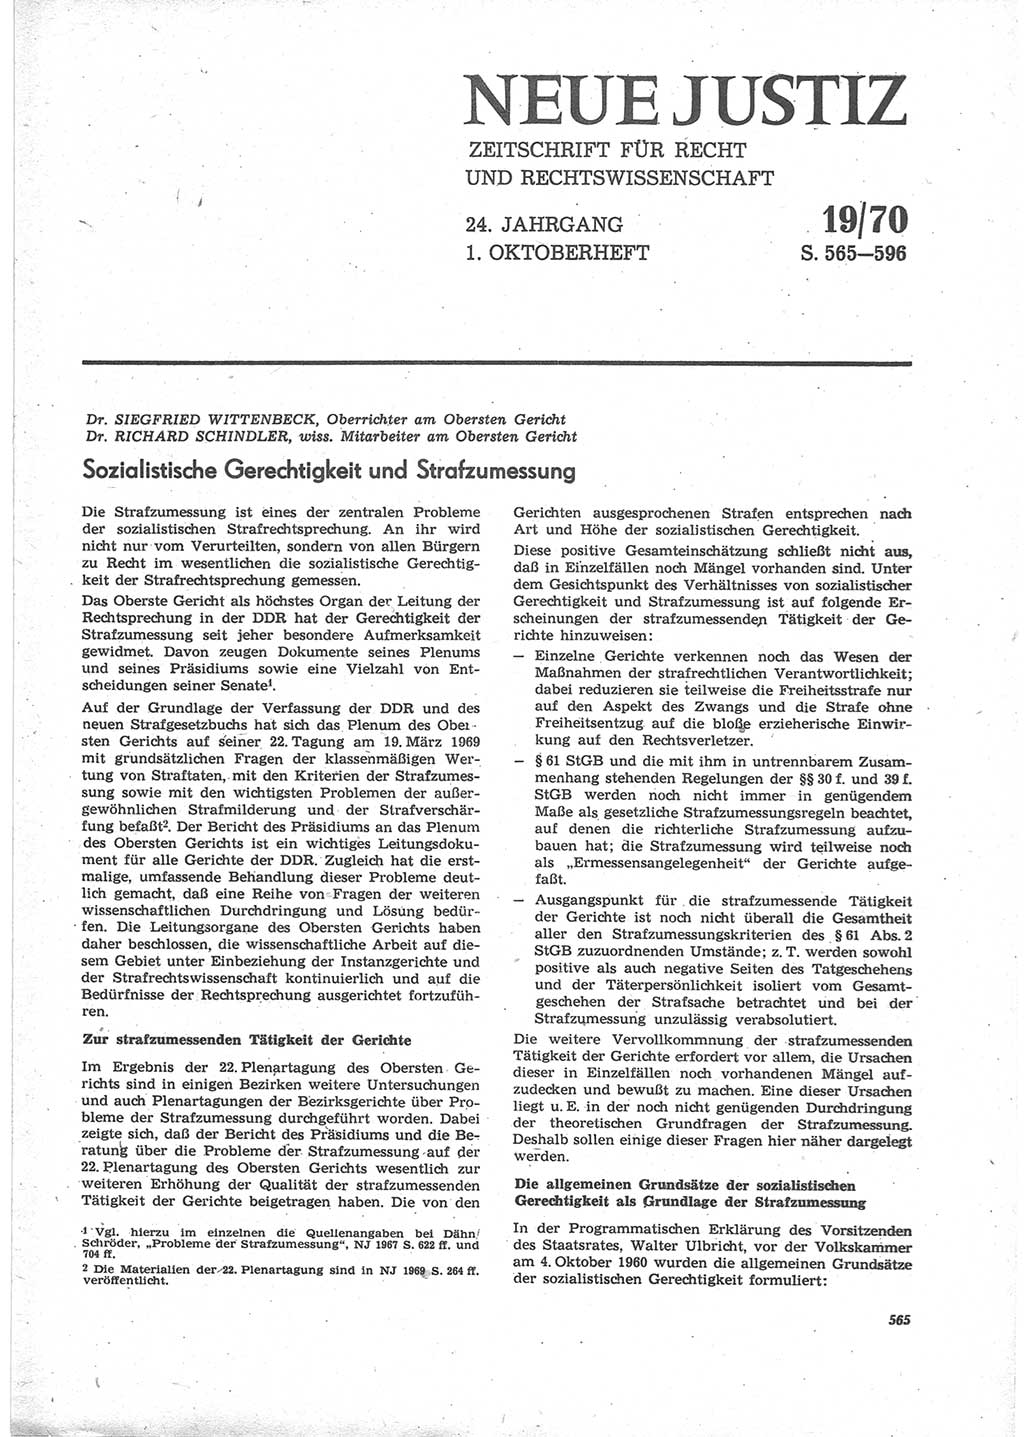 Neue Justiz (NJ), Zeitschrift für Recht und Rechtswissenschaft [Deutsche Demokratische Republik (DDR)], 24. Jahrgang 1970, Seite 565 (NJ DDR 1970, S. 565)